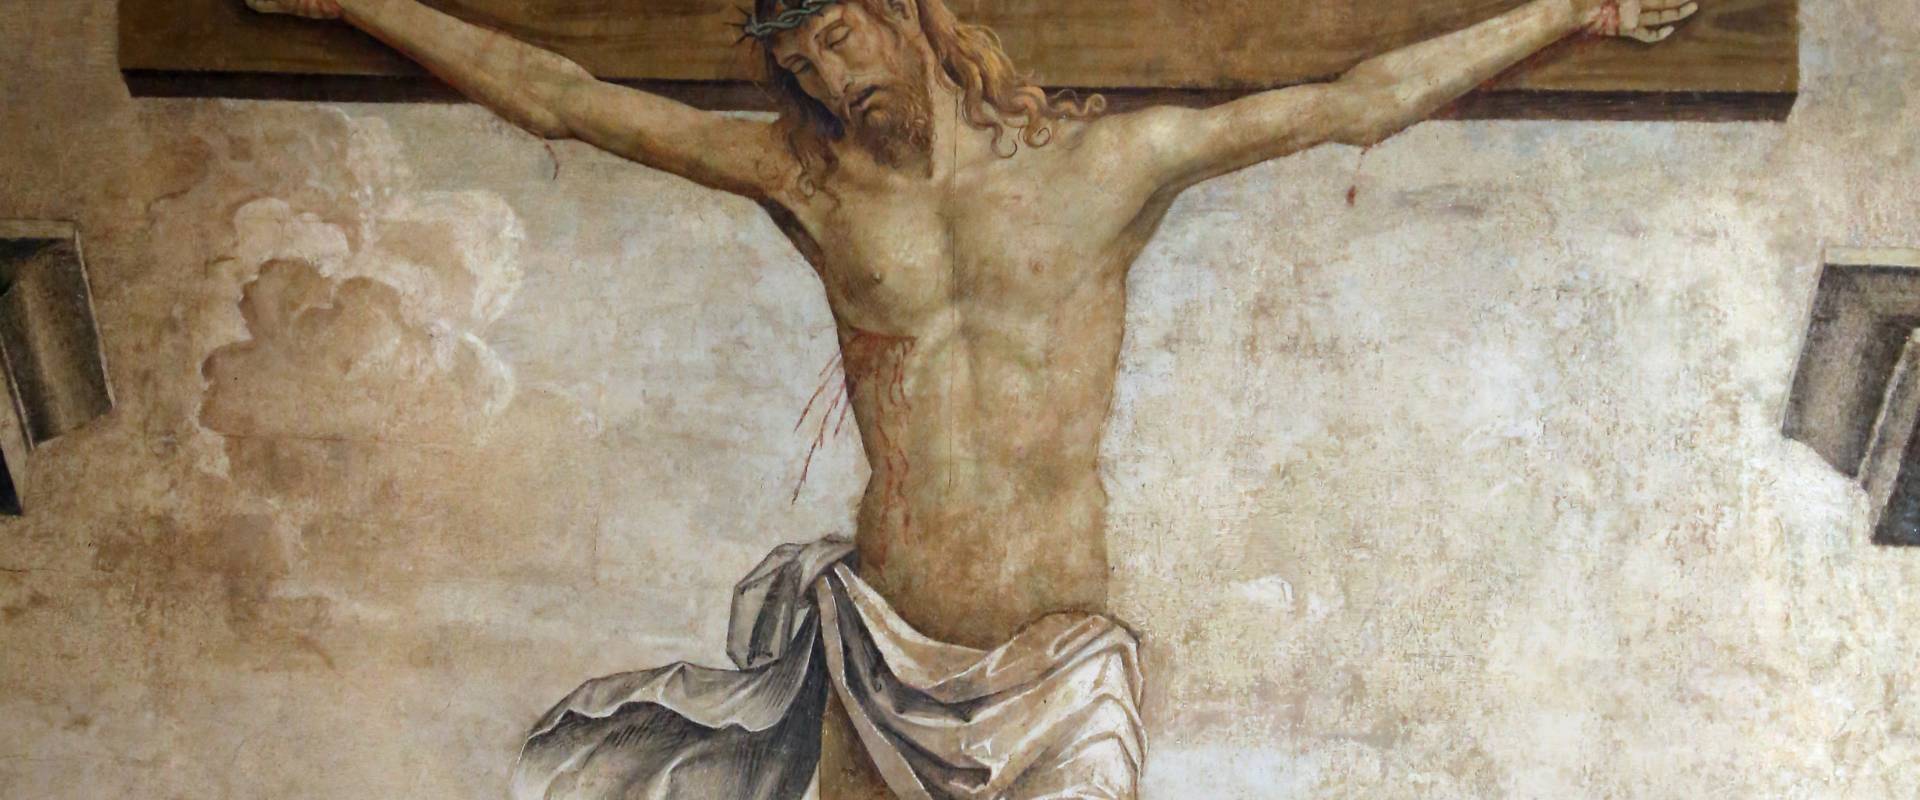 Marco palmezzano, crocifissione e santi, 1492, da s.m. della ripa a forlì, 02 photo by Sailko